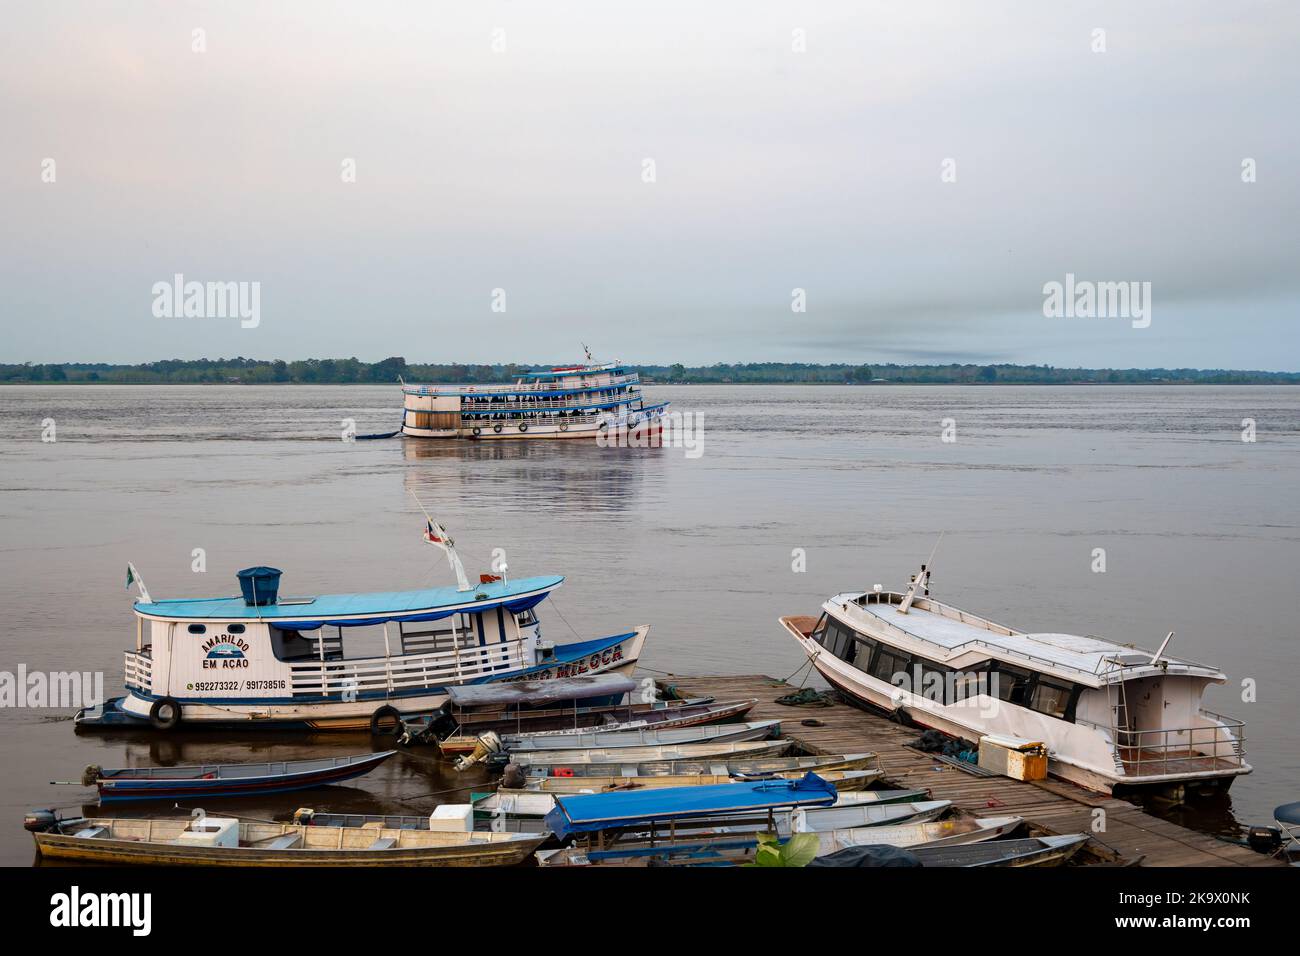 Boats on the Amazon river at the Port of Itacoatiara, Amazonas, Brazil. Stock Photo